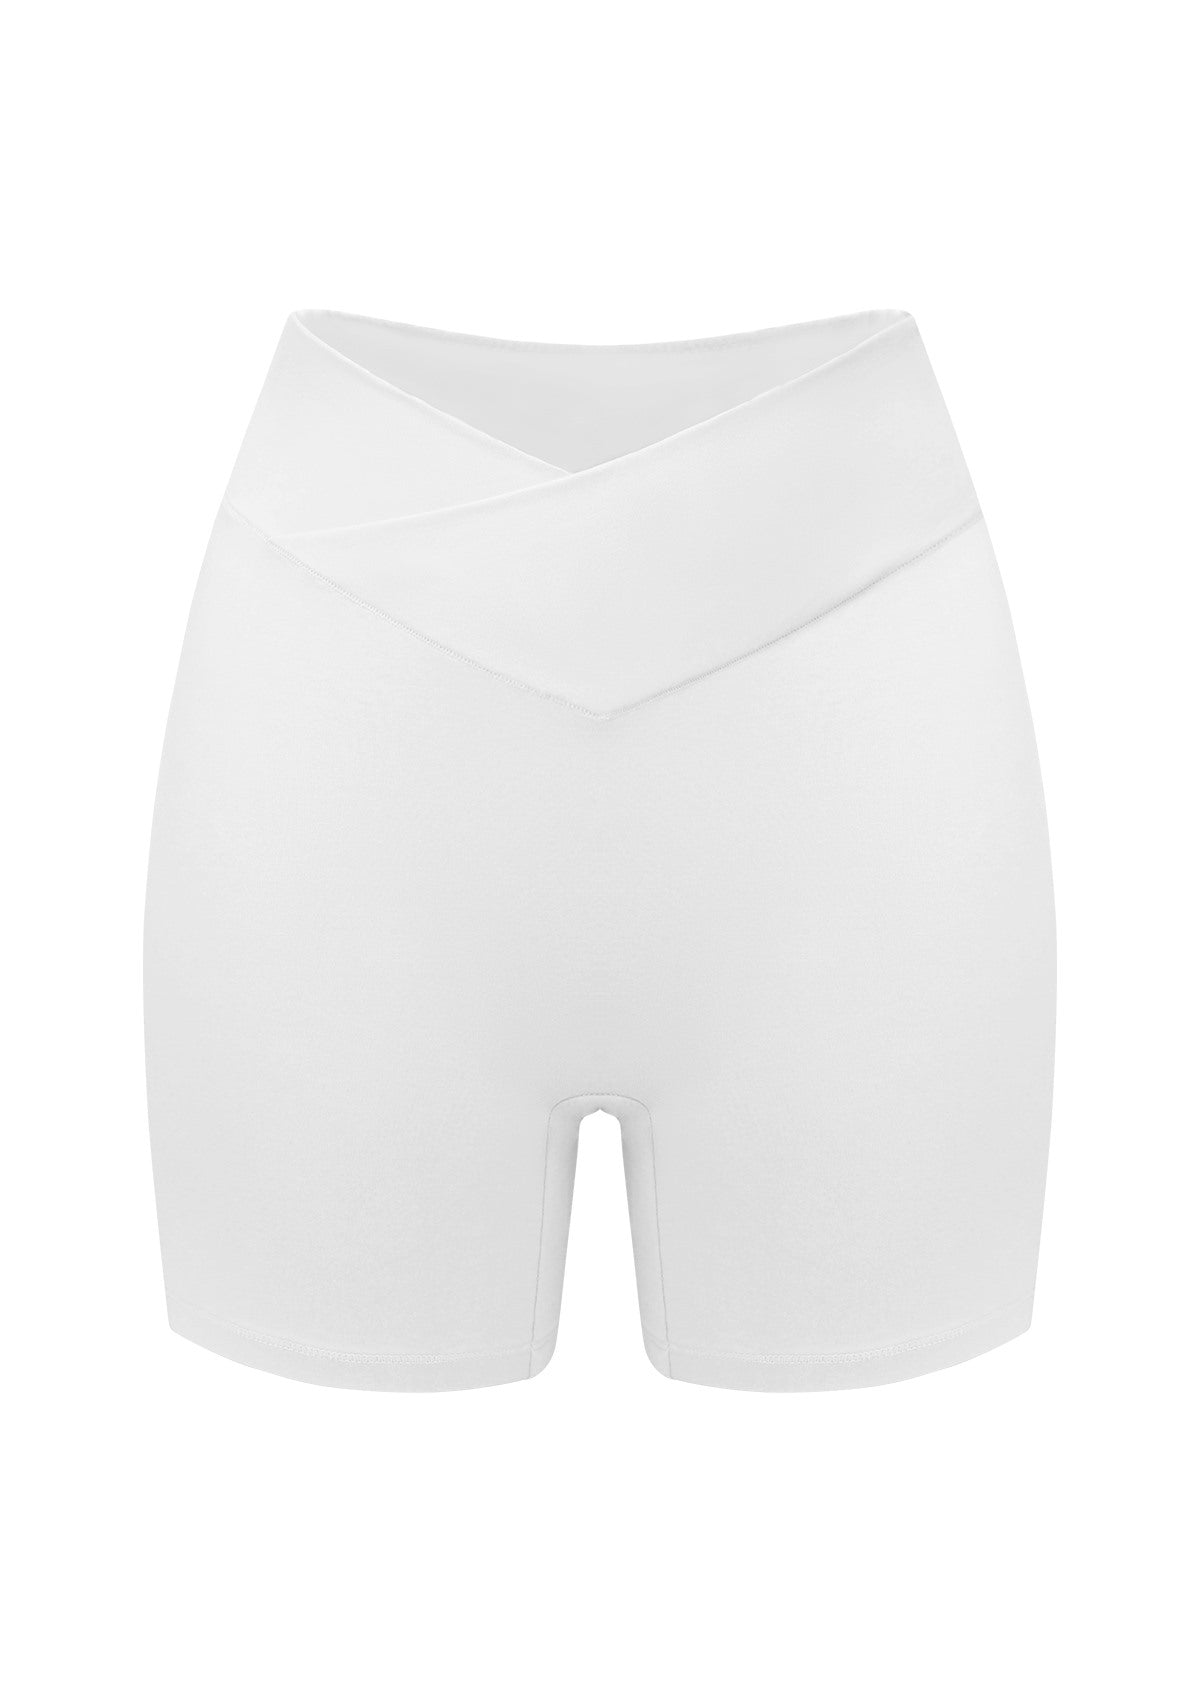 All-Day Comfort High-Rise Cotton Boyshorts Underwear 3 Pack - XL / Black+White+Beige